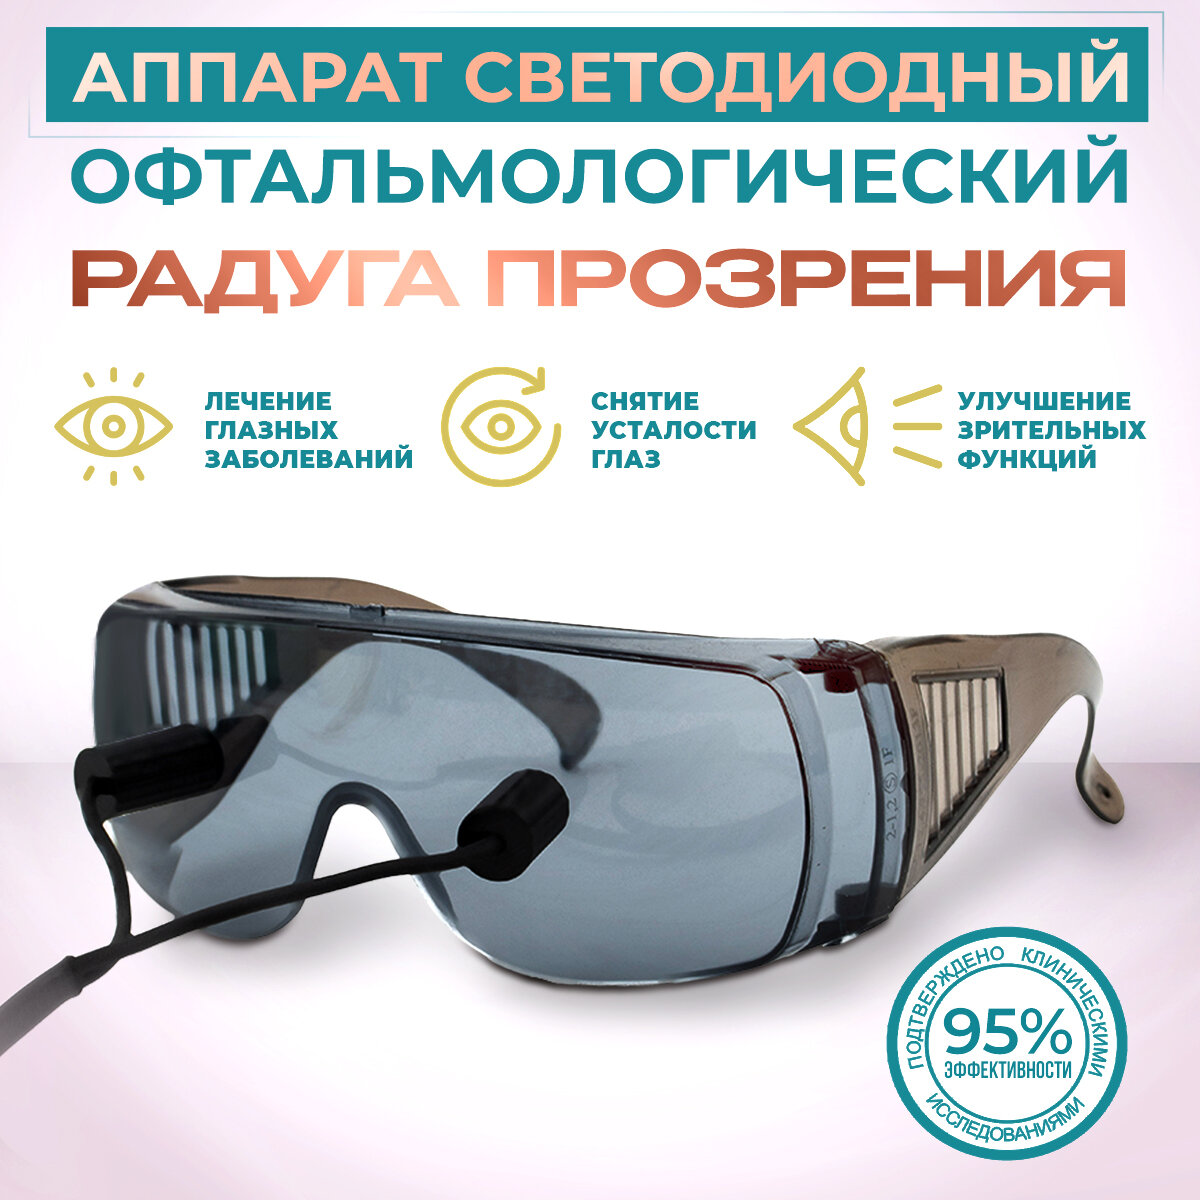 SELFDOCS Аппарат светодиодный офтальмологический "Радуга прозрения"